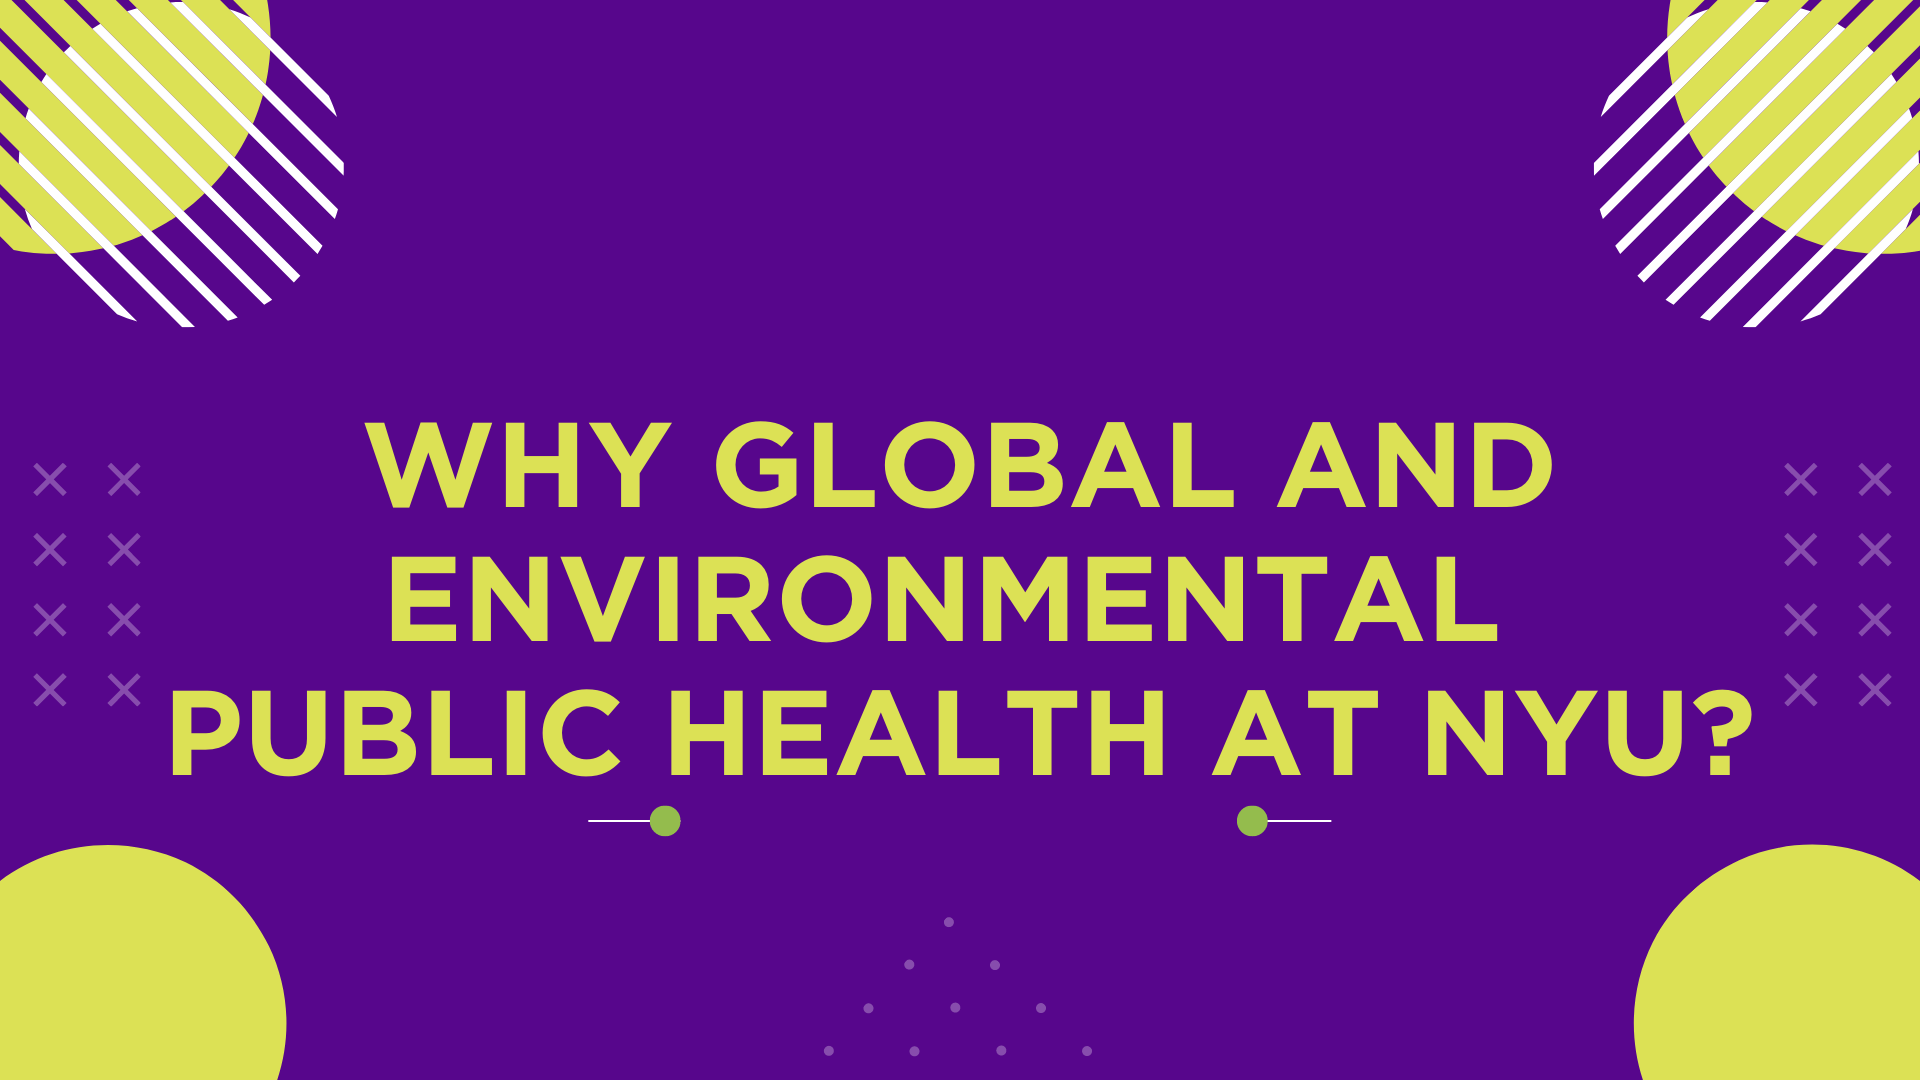 Why Global and Environmental Health at NYU?